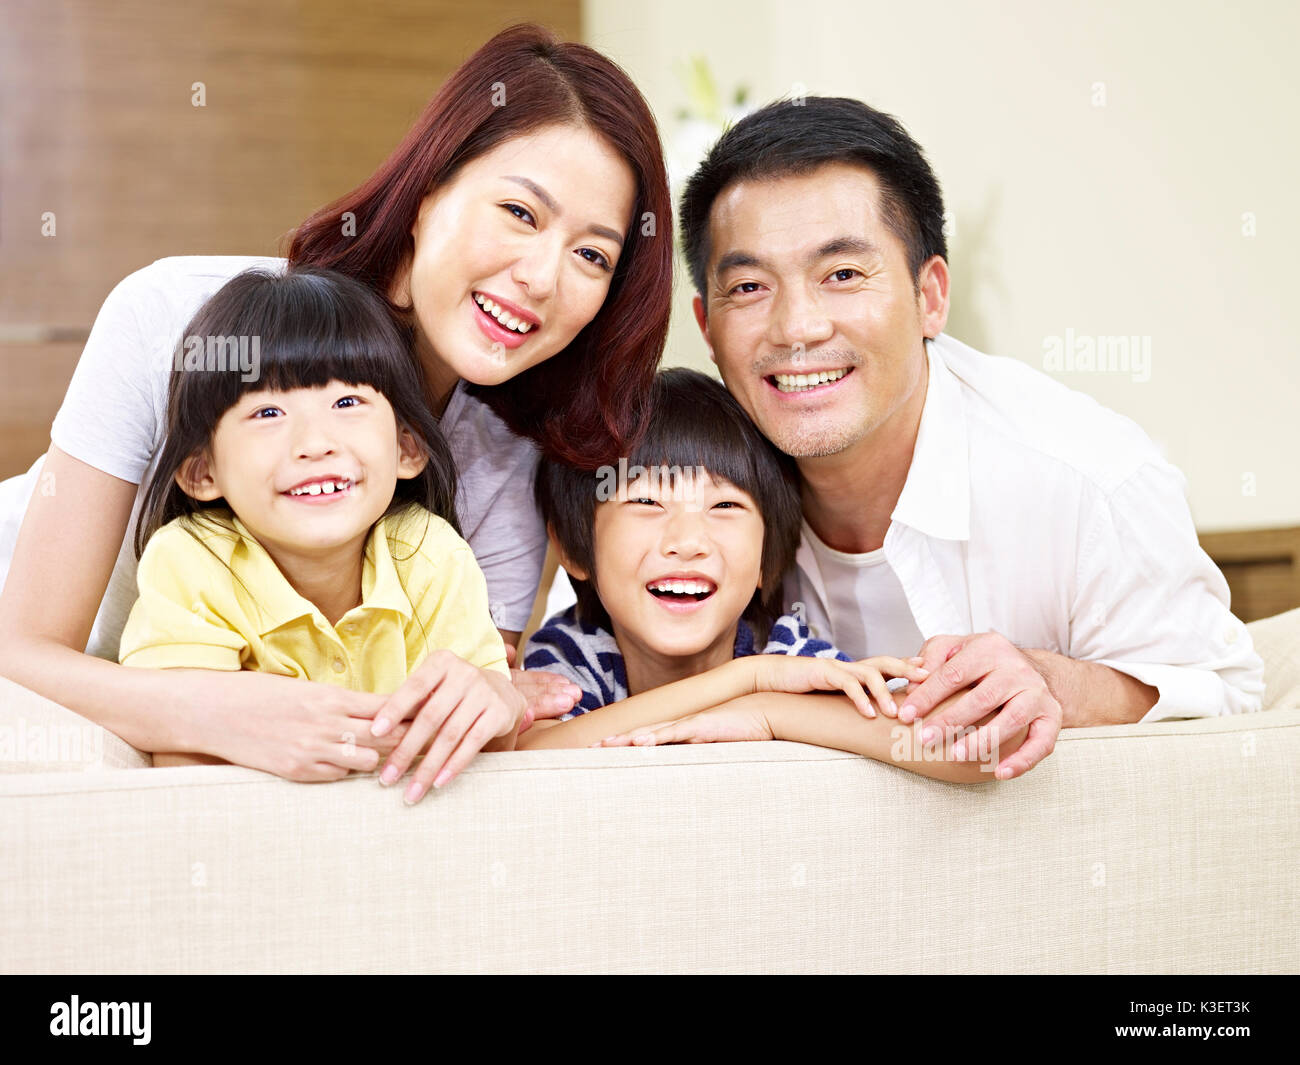 Porträt einer asiatischen Familie mit zwei Kindern, glücklich und lächelnd. Stockfoto